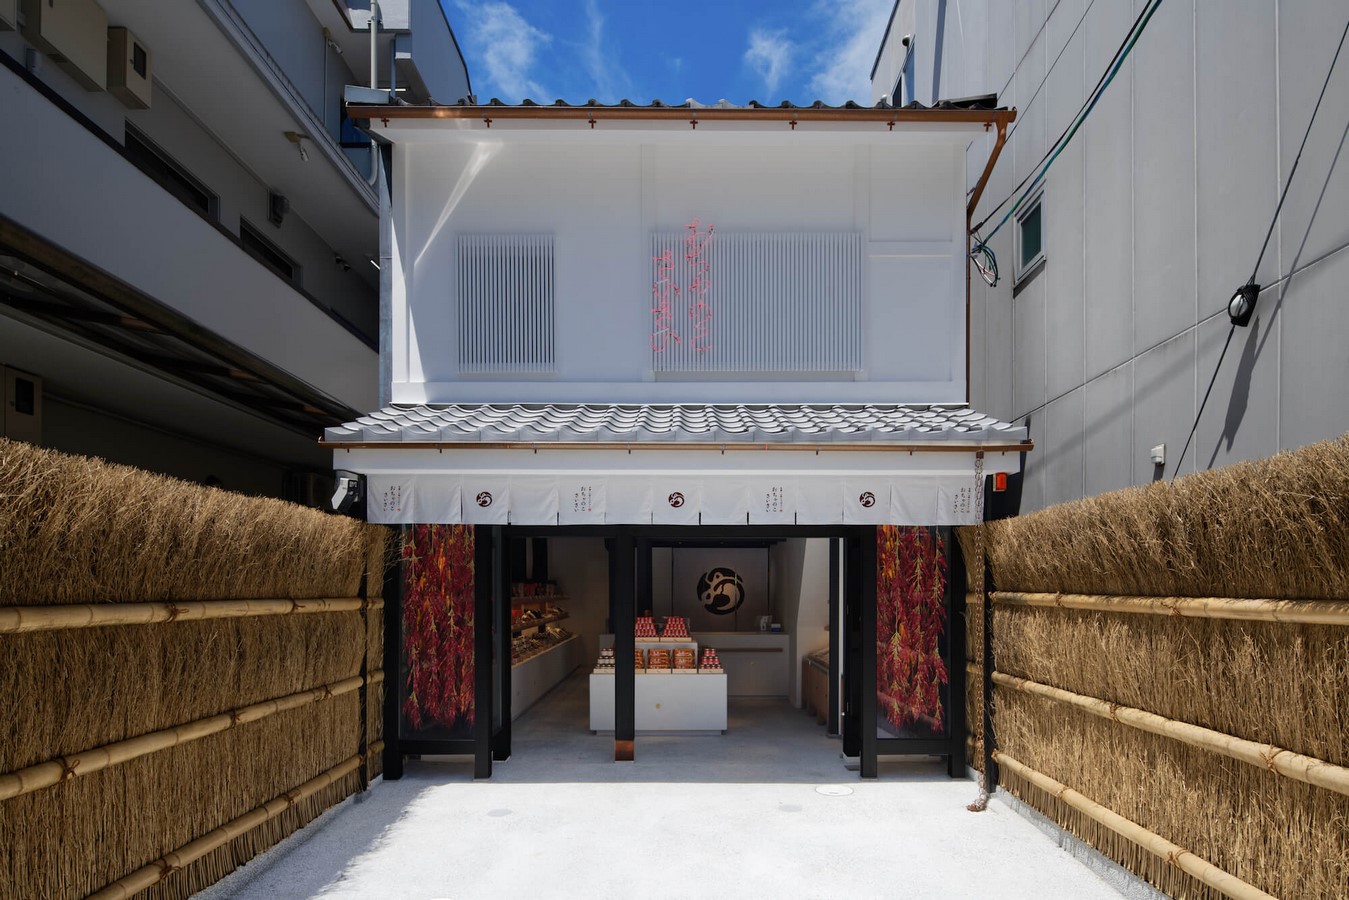 Architects in Kyoto - Top 15 Architects in Kyoto - Sheet1